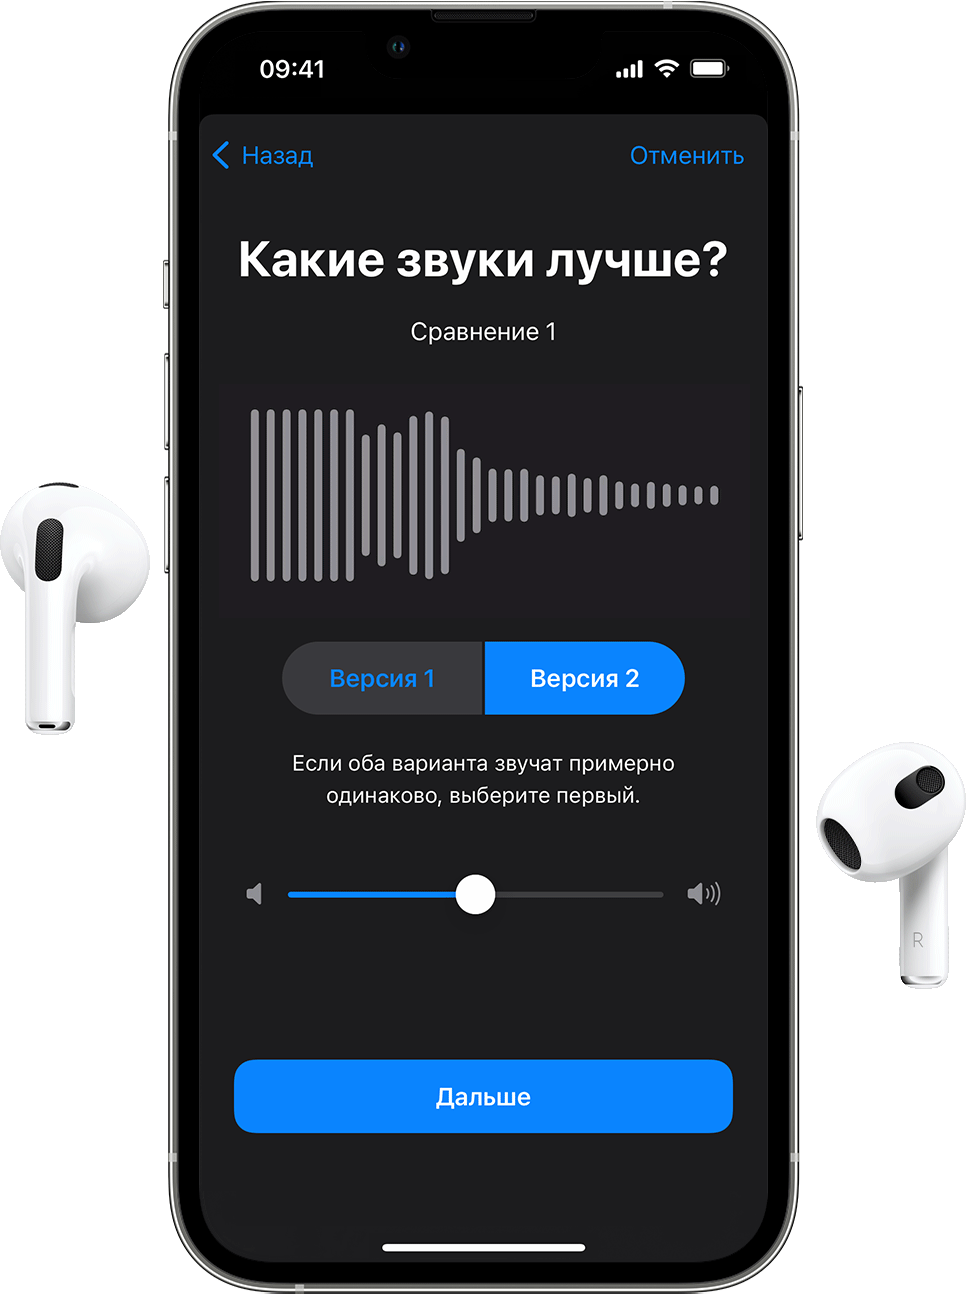 Так выглядит тест для пользовательской настройки звука в подключенных к iPhone наушниках AirPods. Система просит выбрать звук, который слышен лучше.